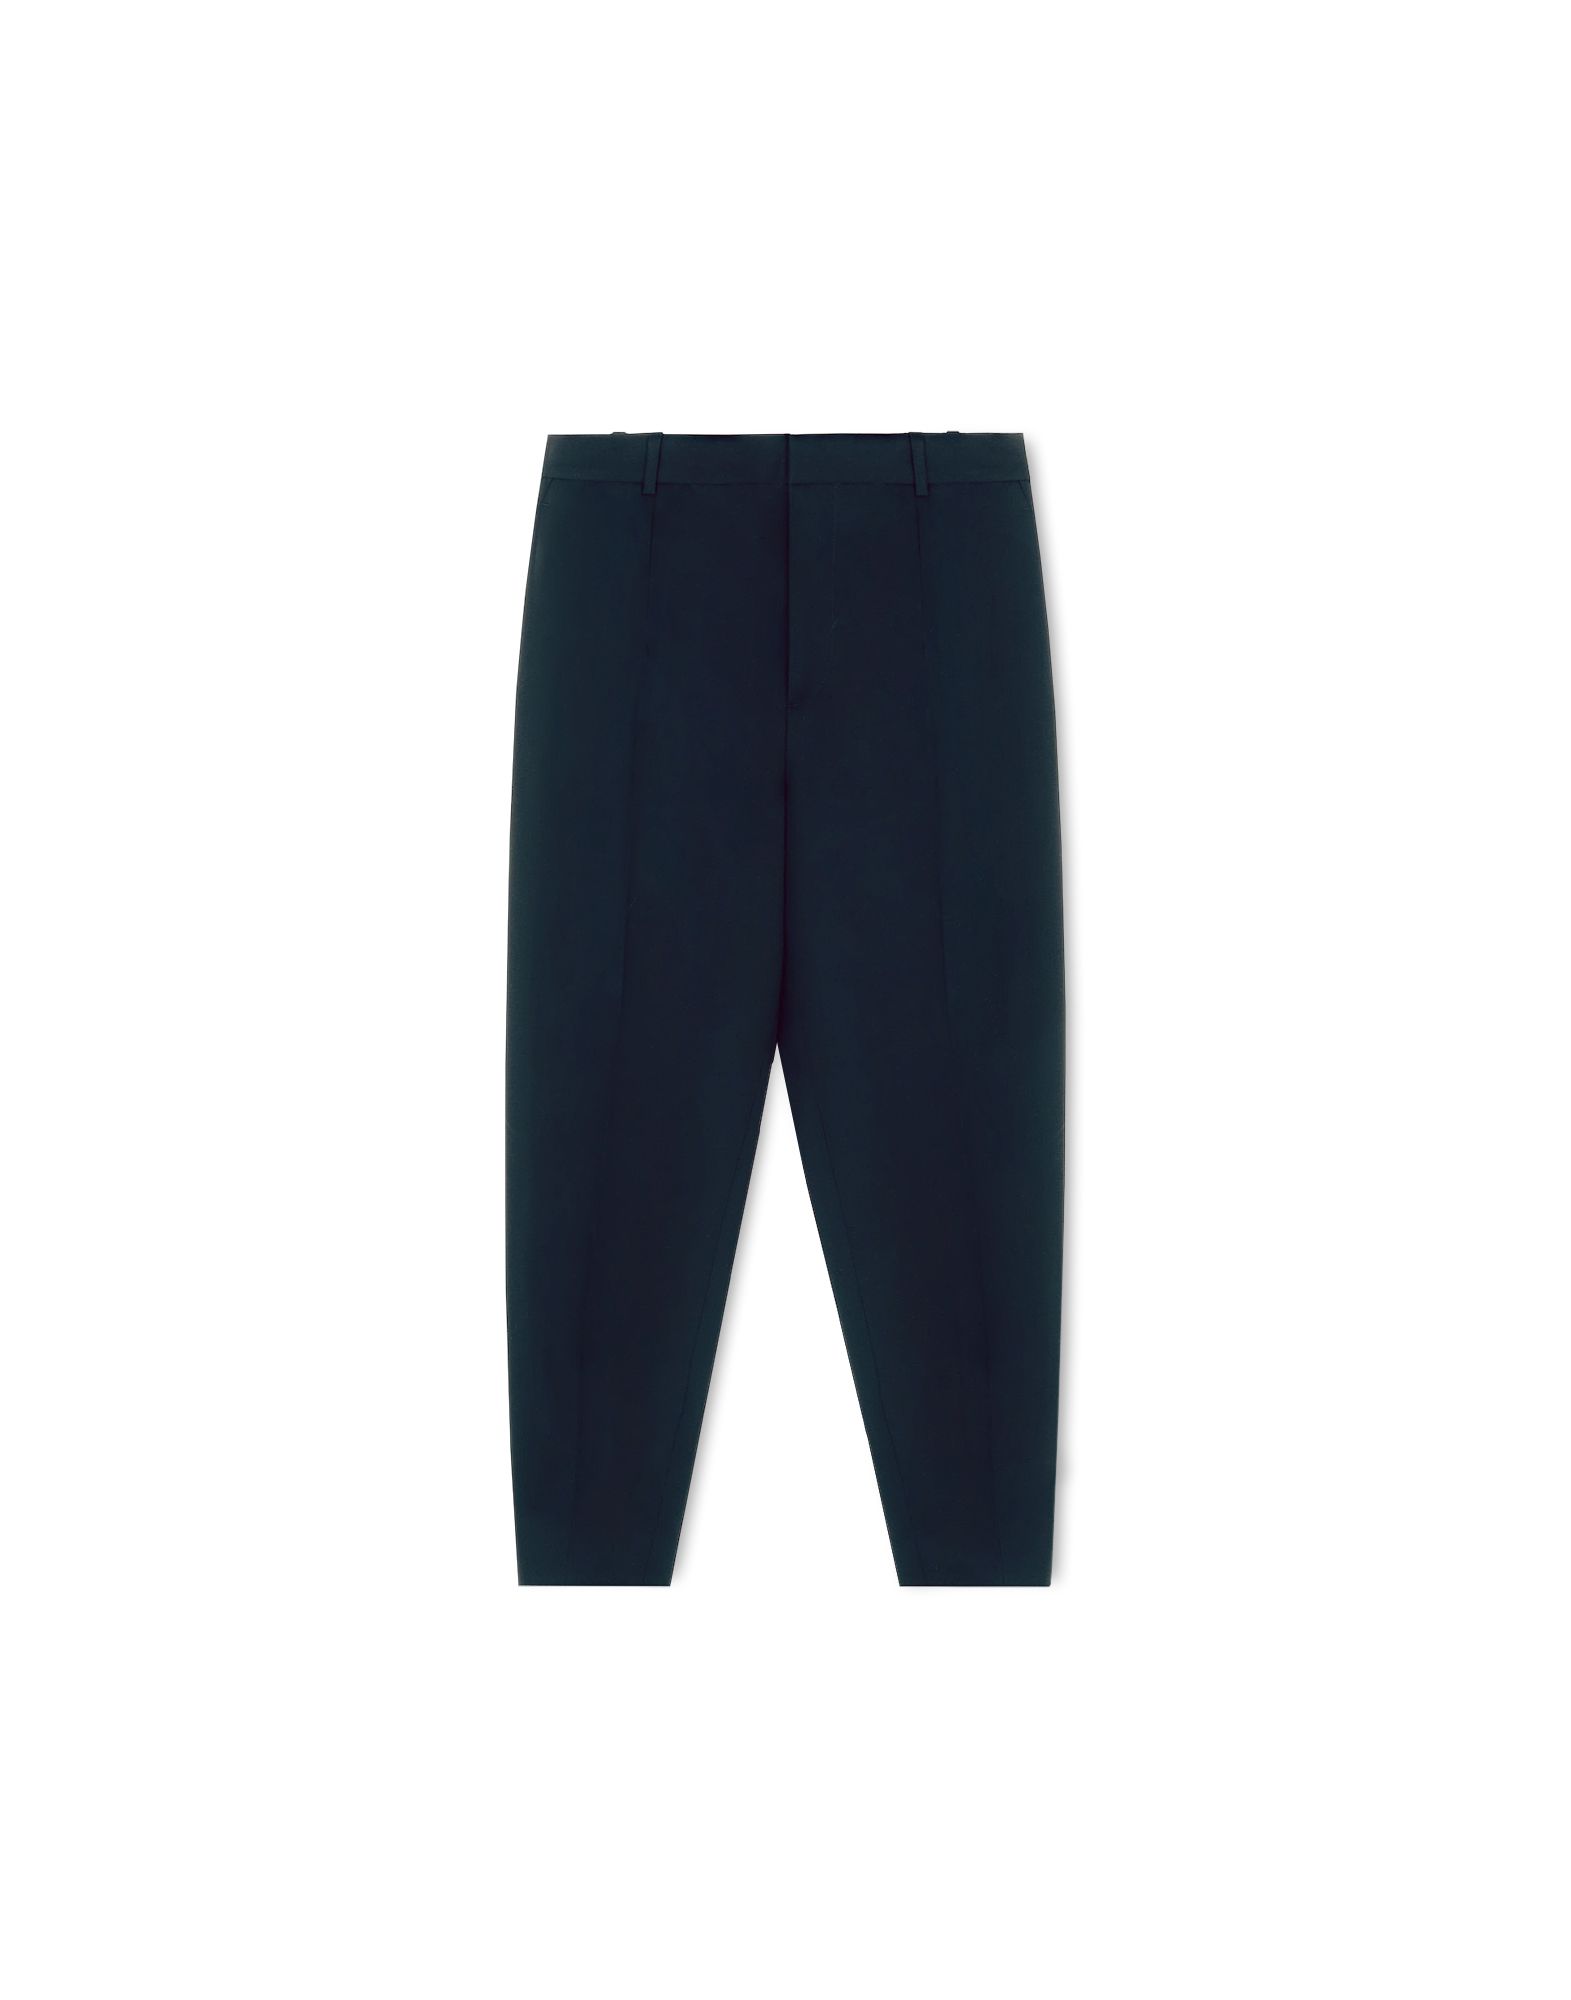 Tailored pants Women Pants Women on Jil Sander Online Store